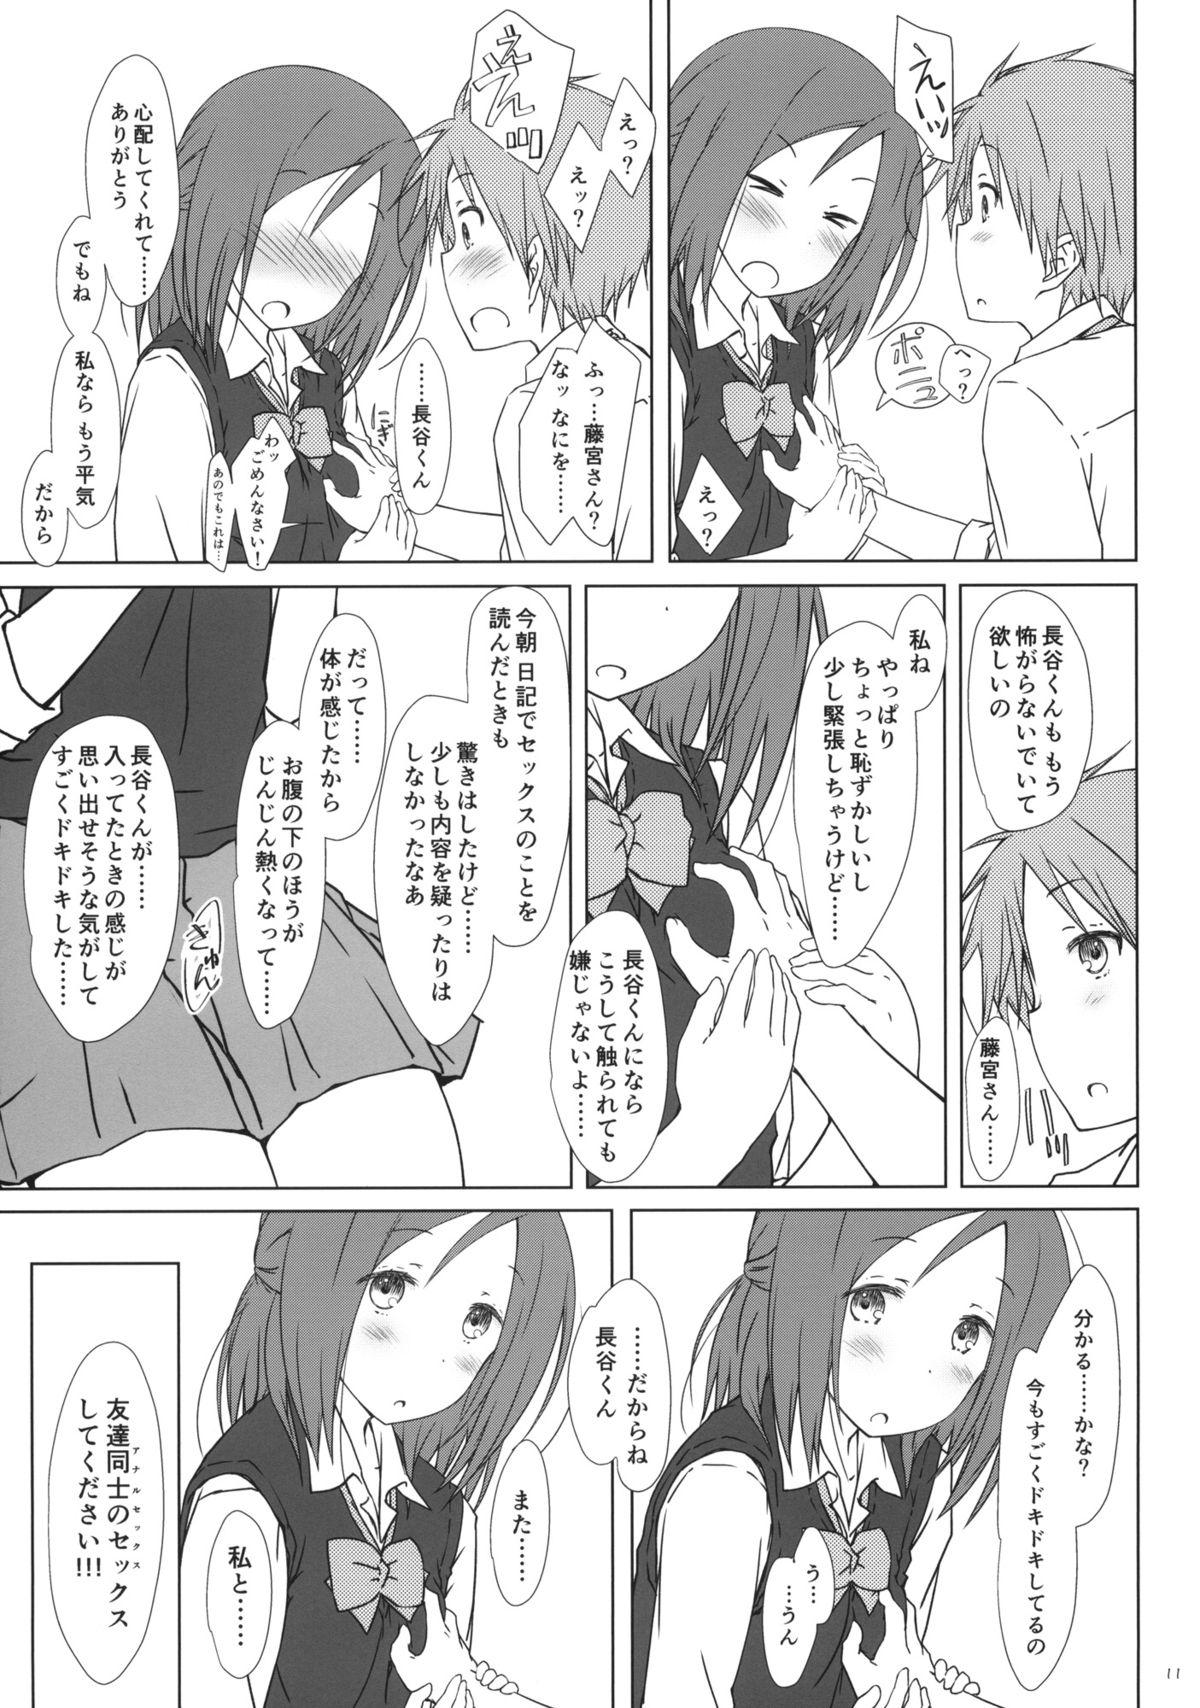 Brother Sister "Tomodachi to no Sex no Tsuzuki no sorekara." + Paper - One week friends Freaky - Page 10